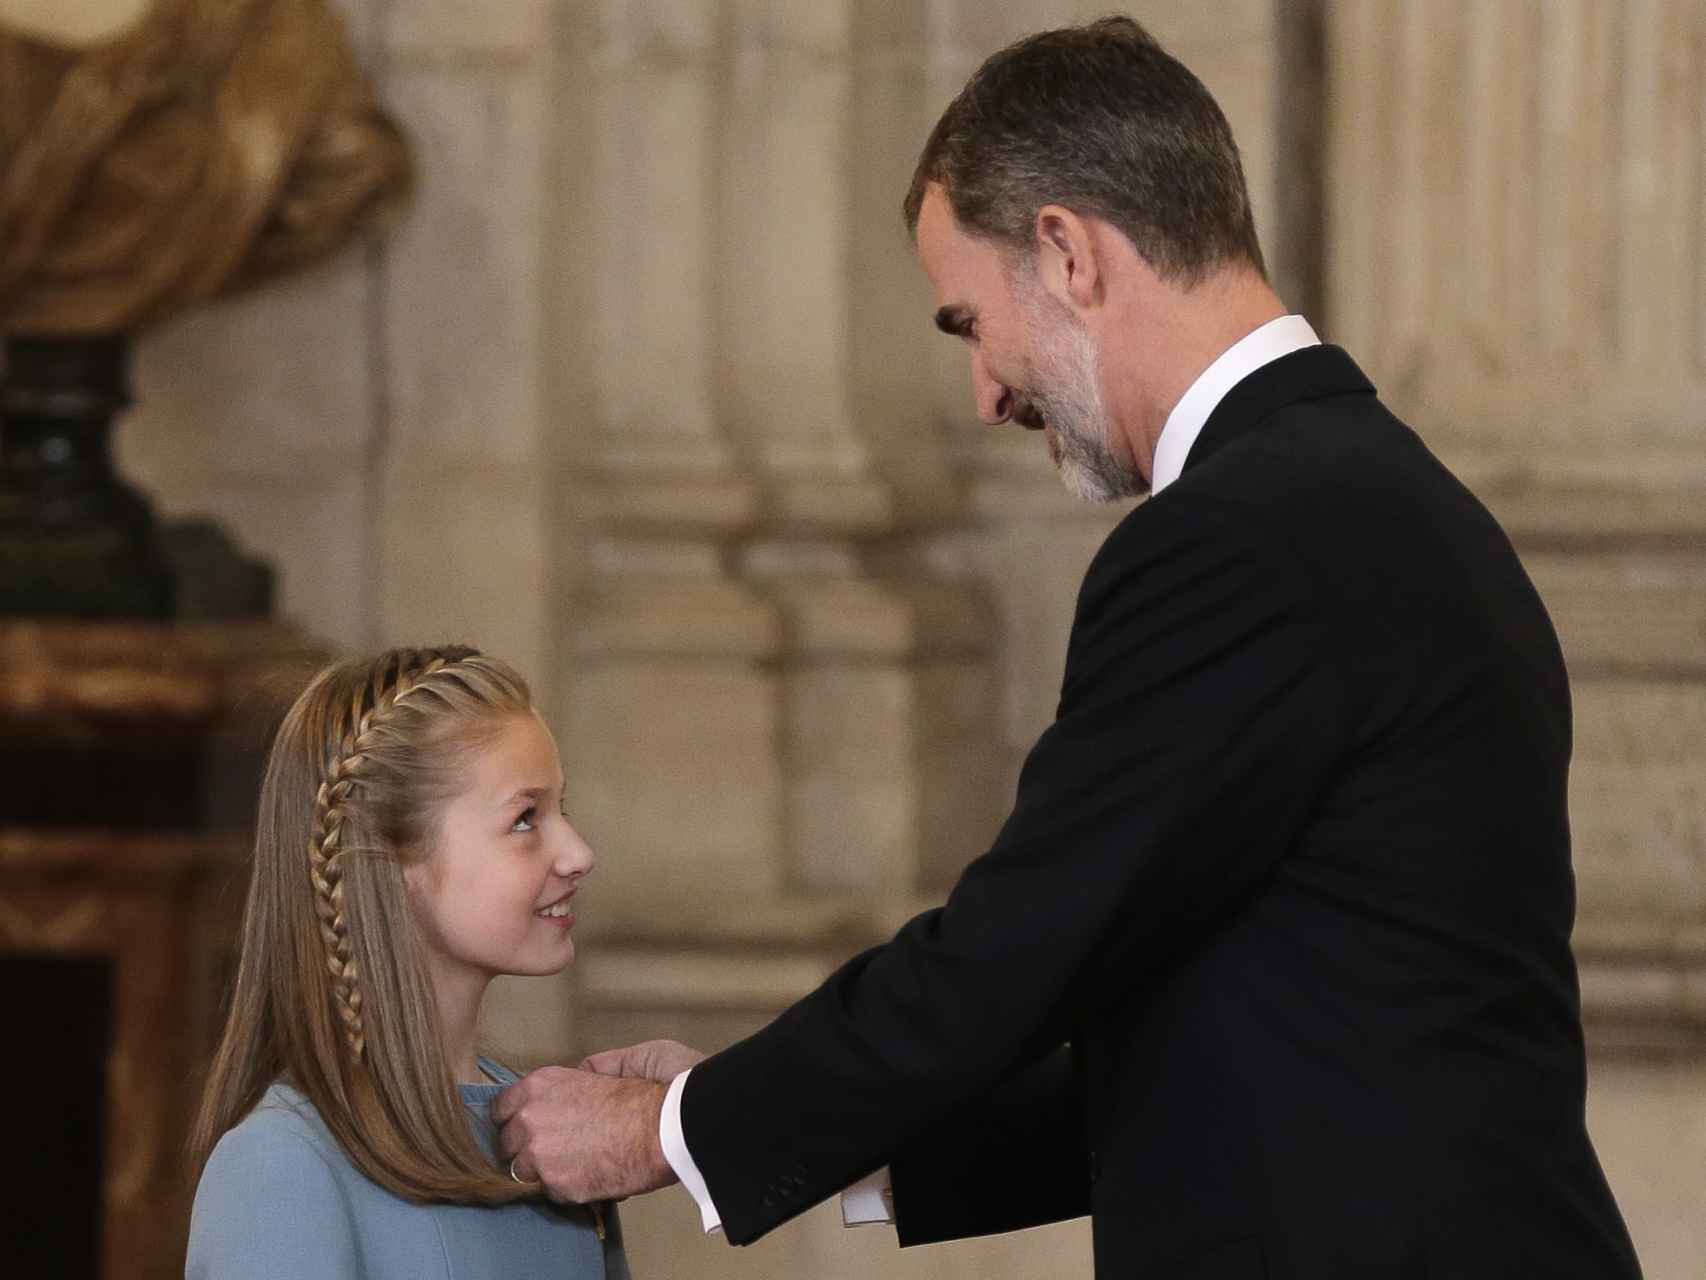 La princesa Leonor recibiendo el Toisón de Oro por parte de su padre, el rey Felipe.